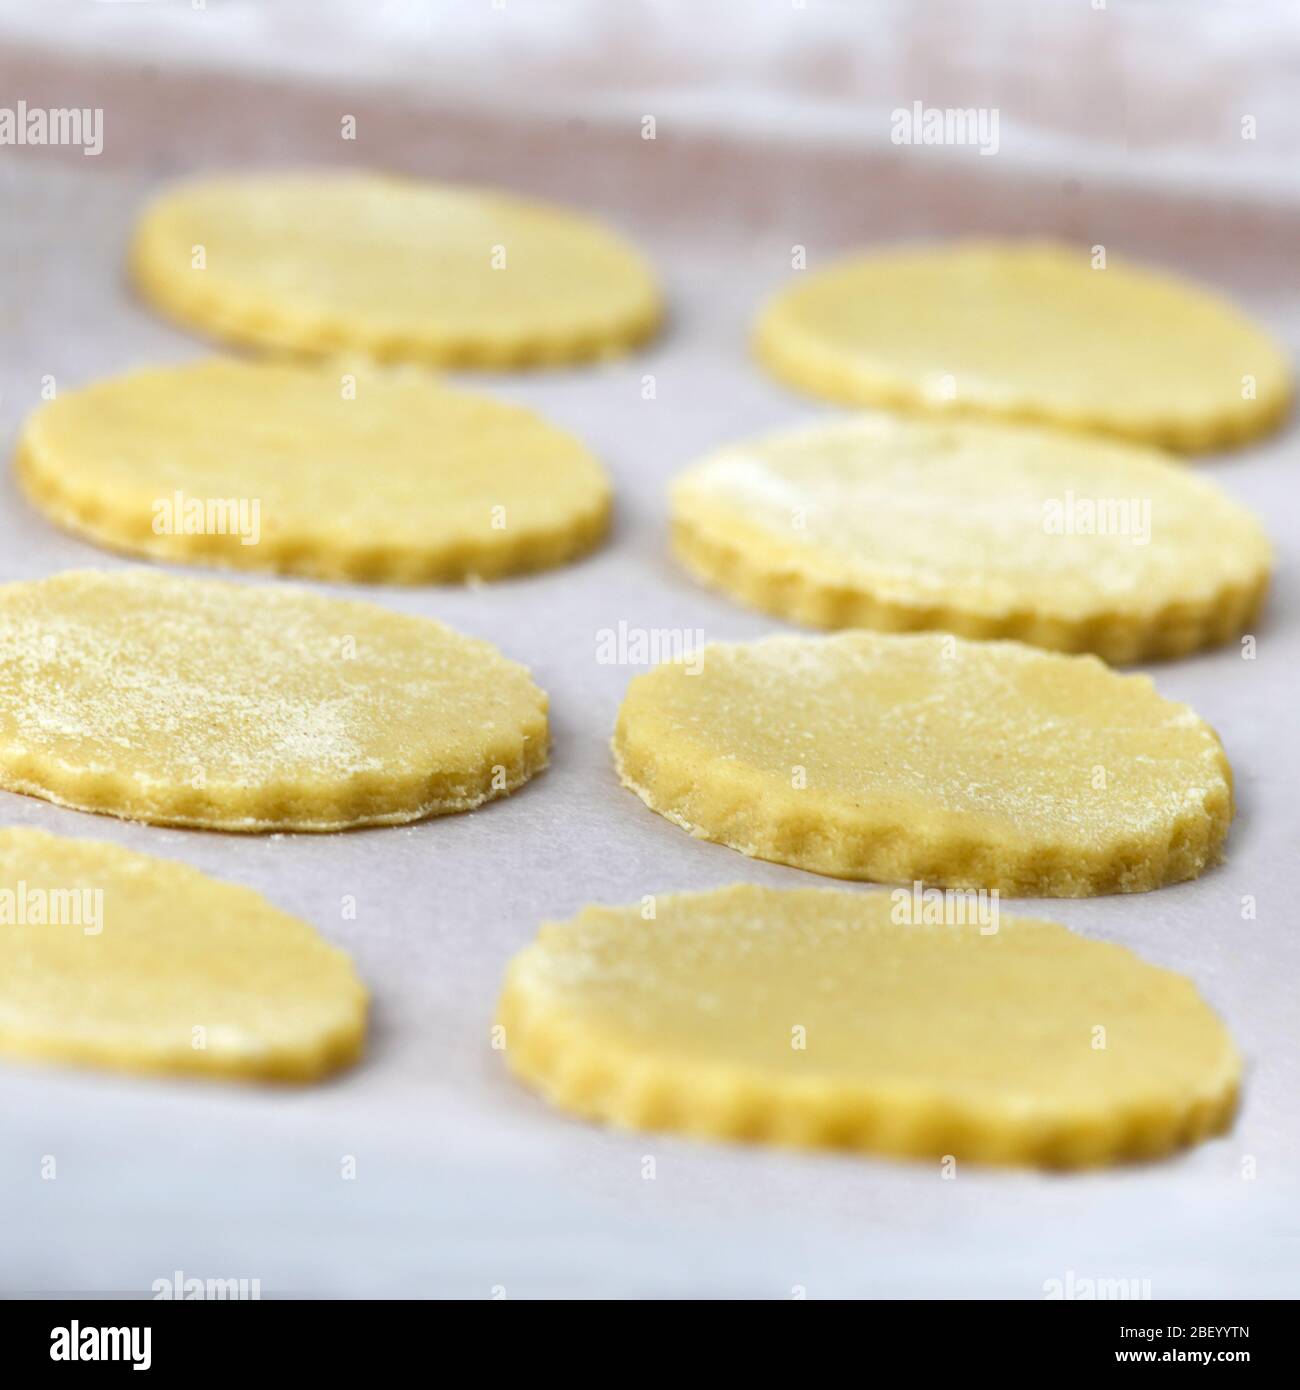 Quadratisches Bild von ungekochten hausgemachten Cookies warten auf den Ofen auf einer Trägerplatte. Aufnahme im Hintergrund mit selektivem Fokus, um Rezept-Overlay hinzuzufügen Stockfoto